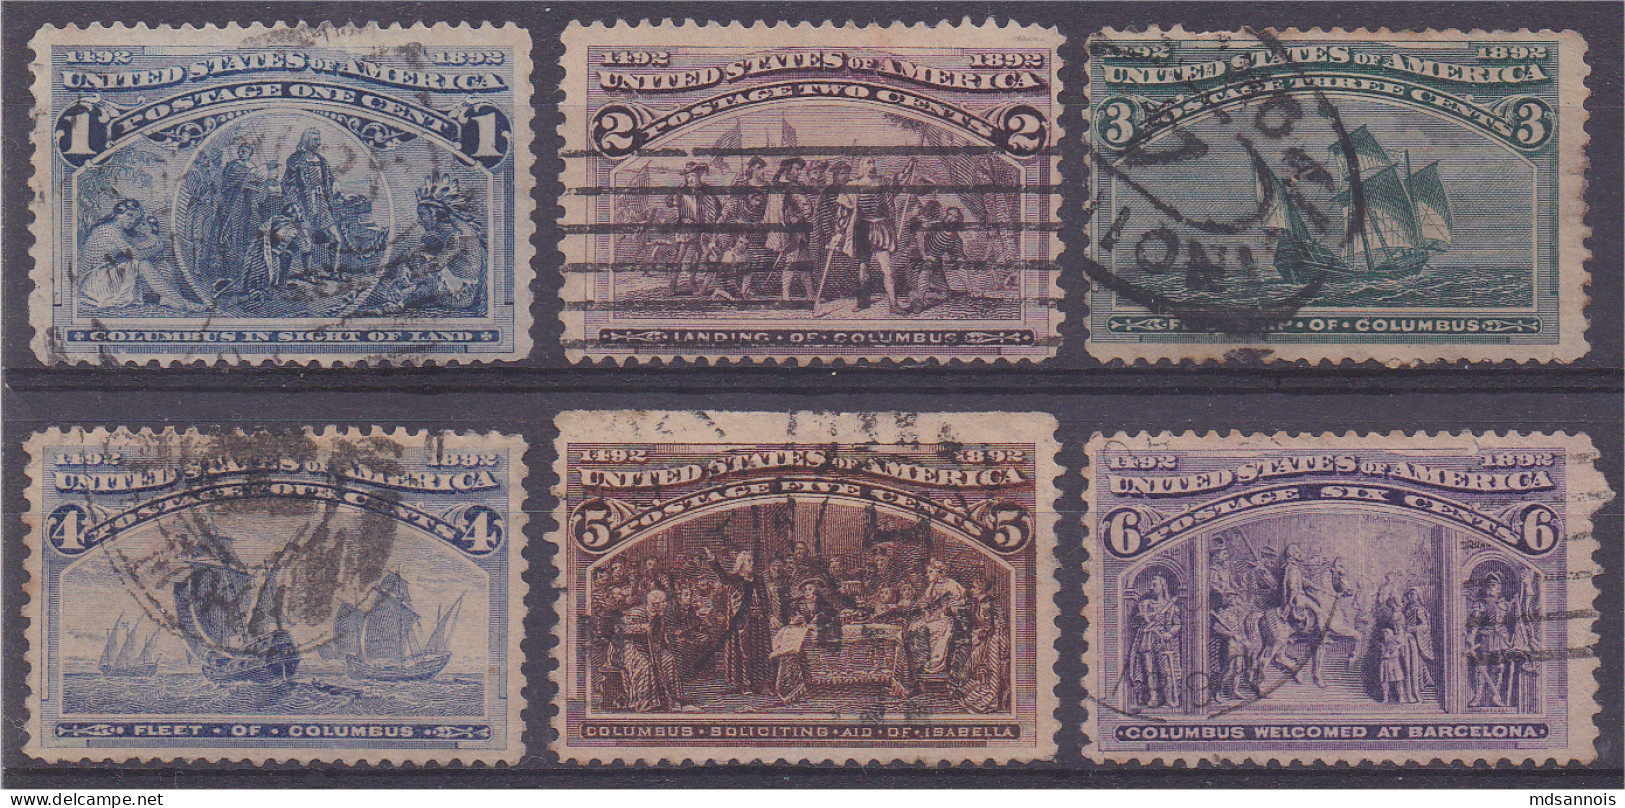 Etats Unis 1893 Lot De 6 Timbres Centenaire De La Découverte - Used Stamps